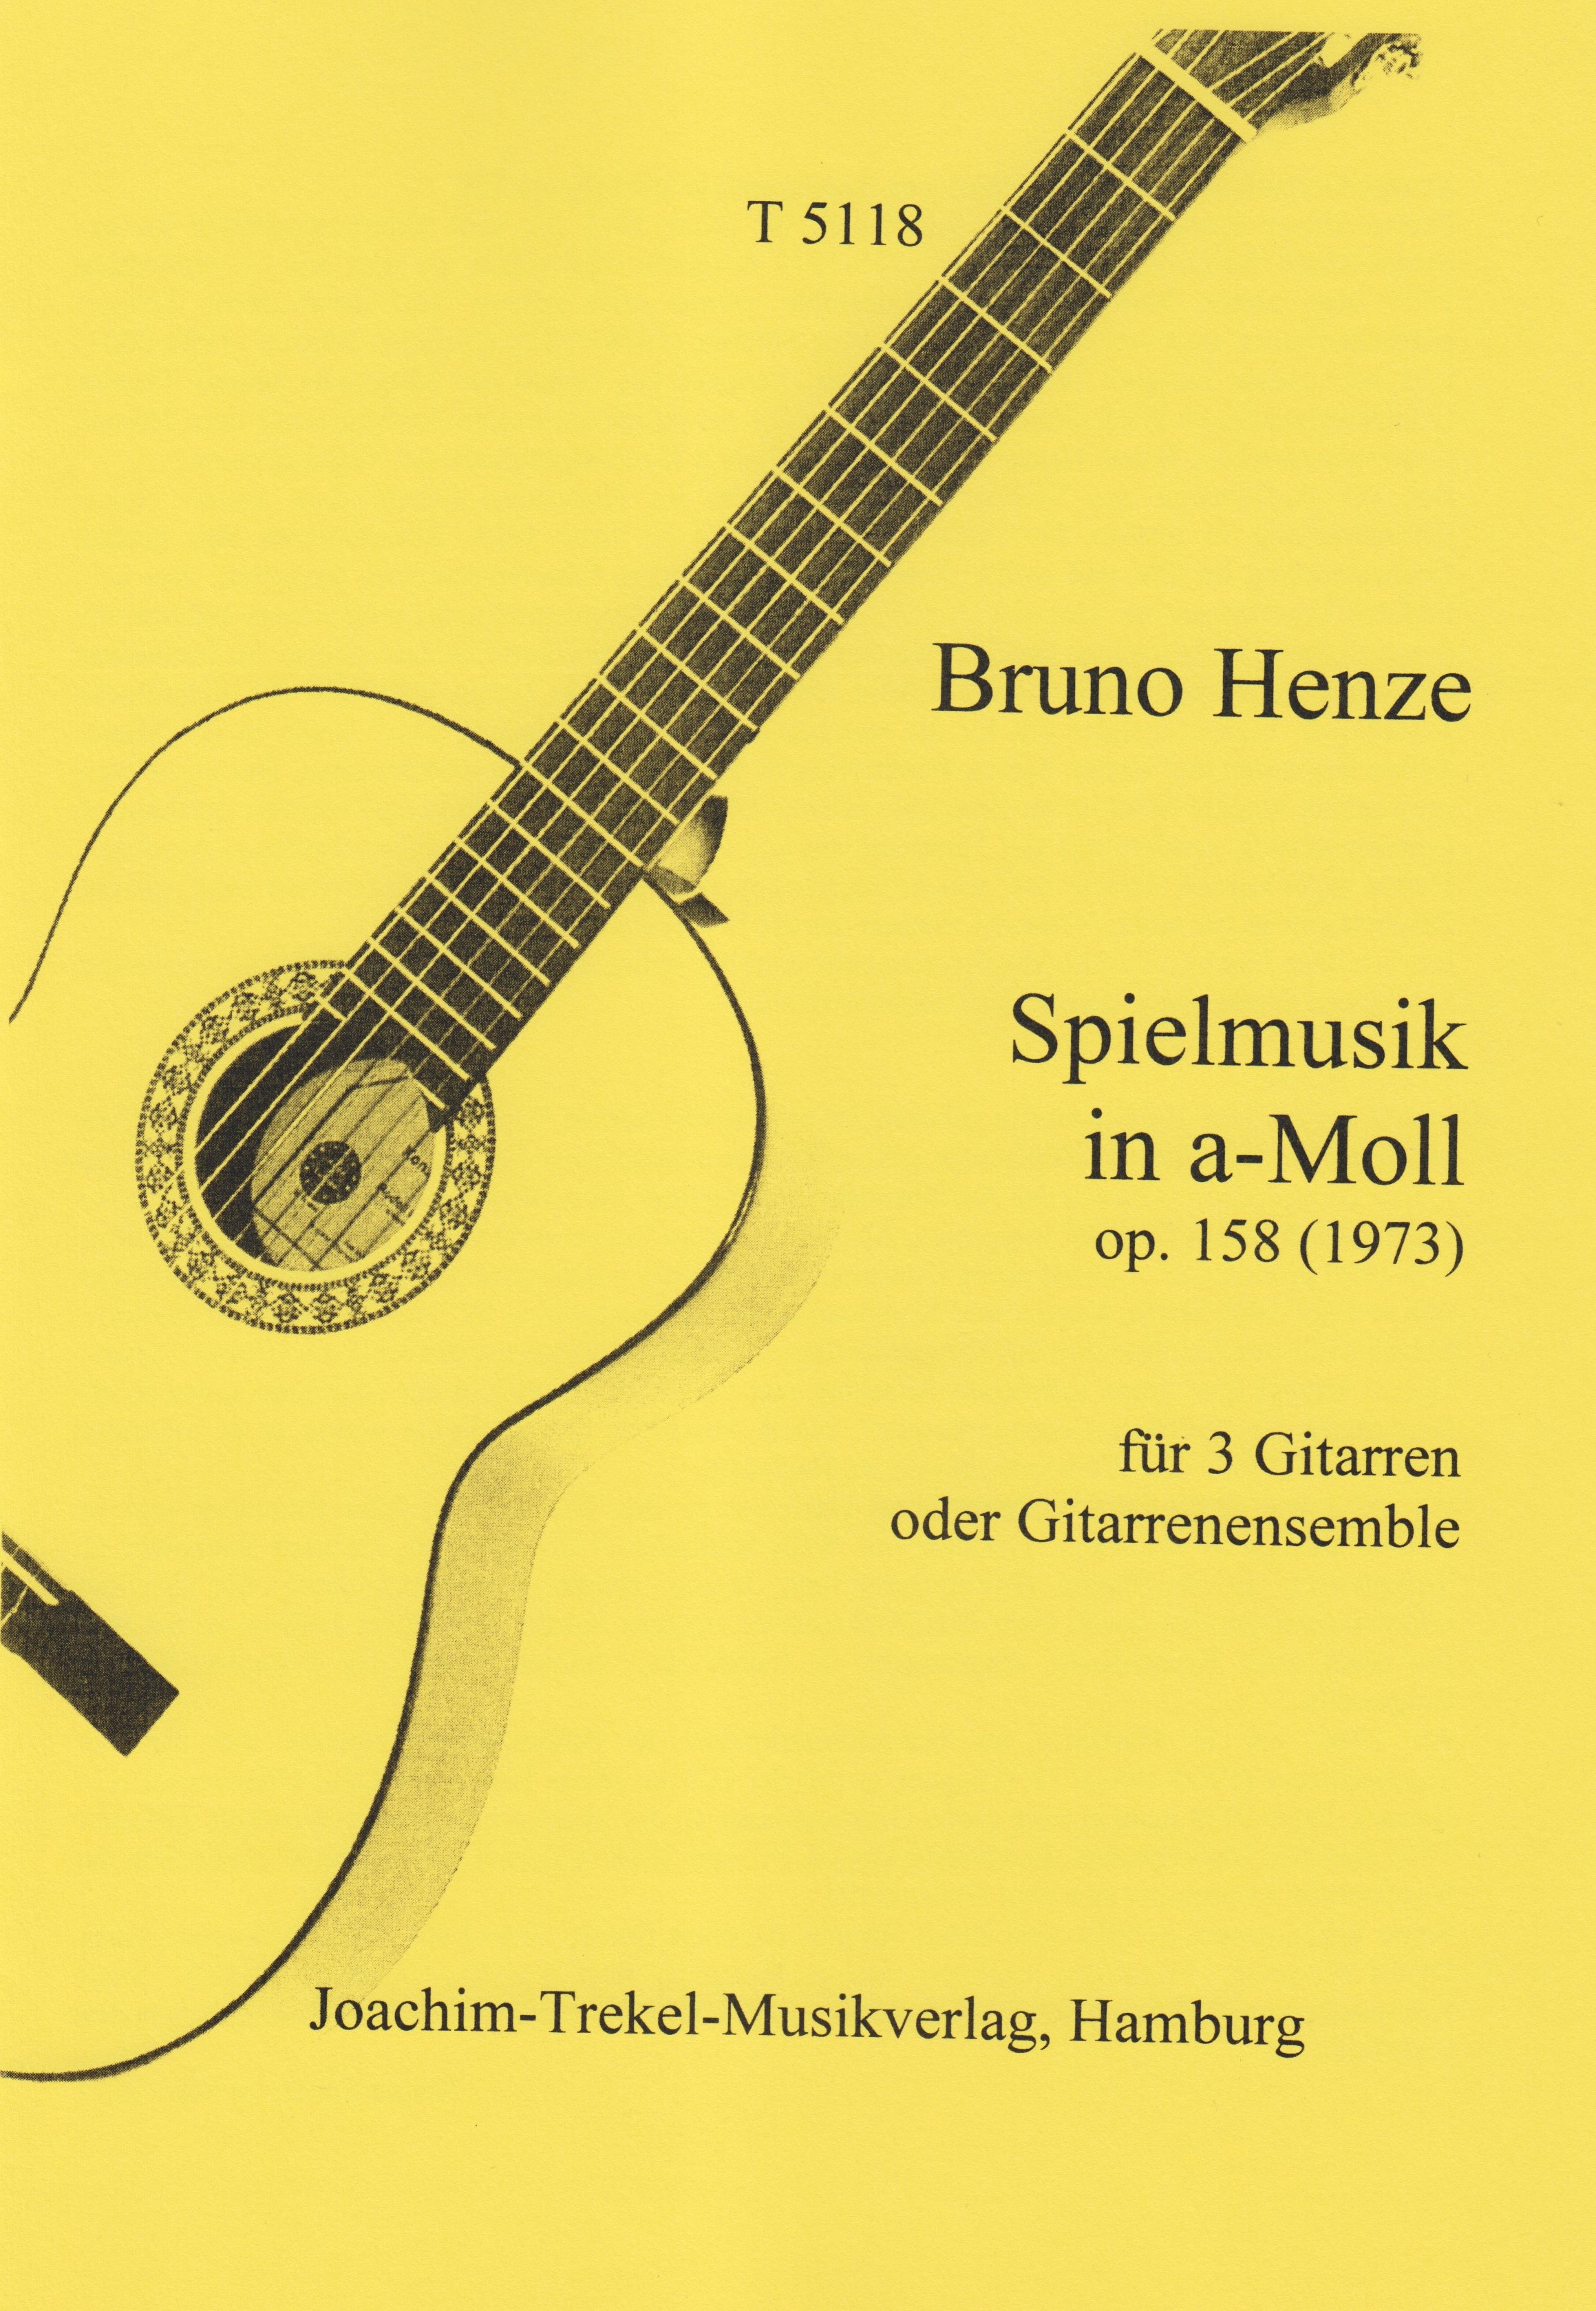 Spielmusik in a-Moll op. 158